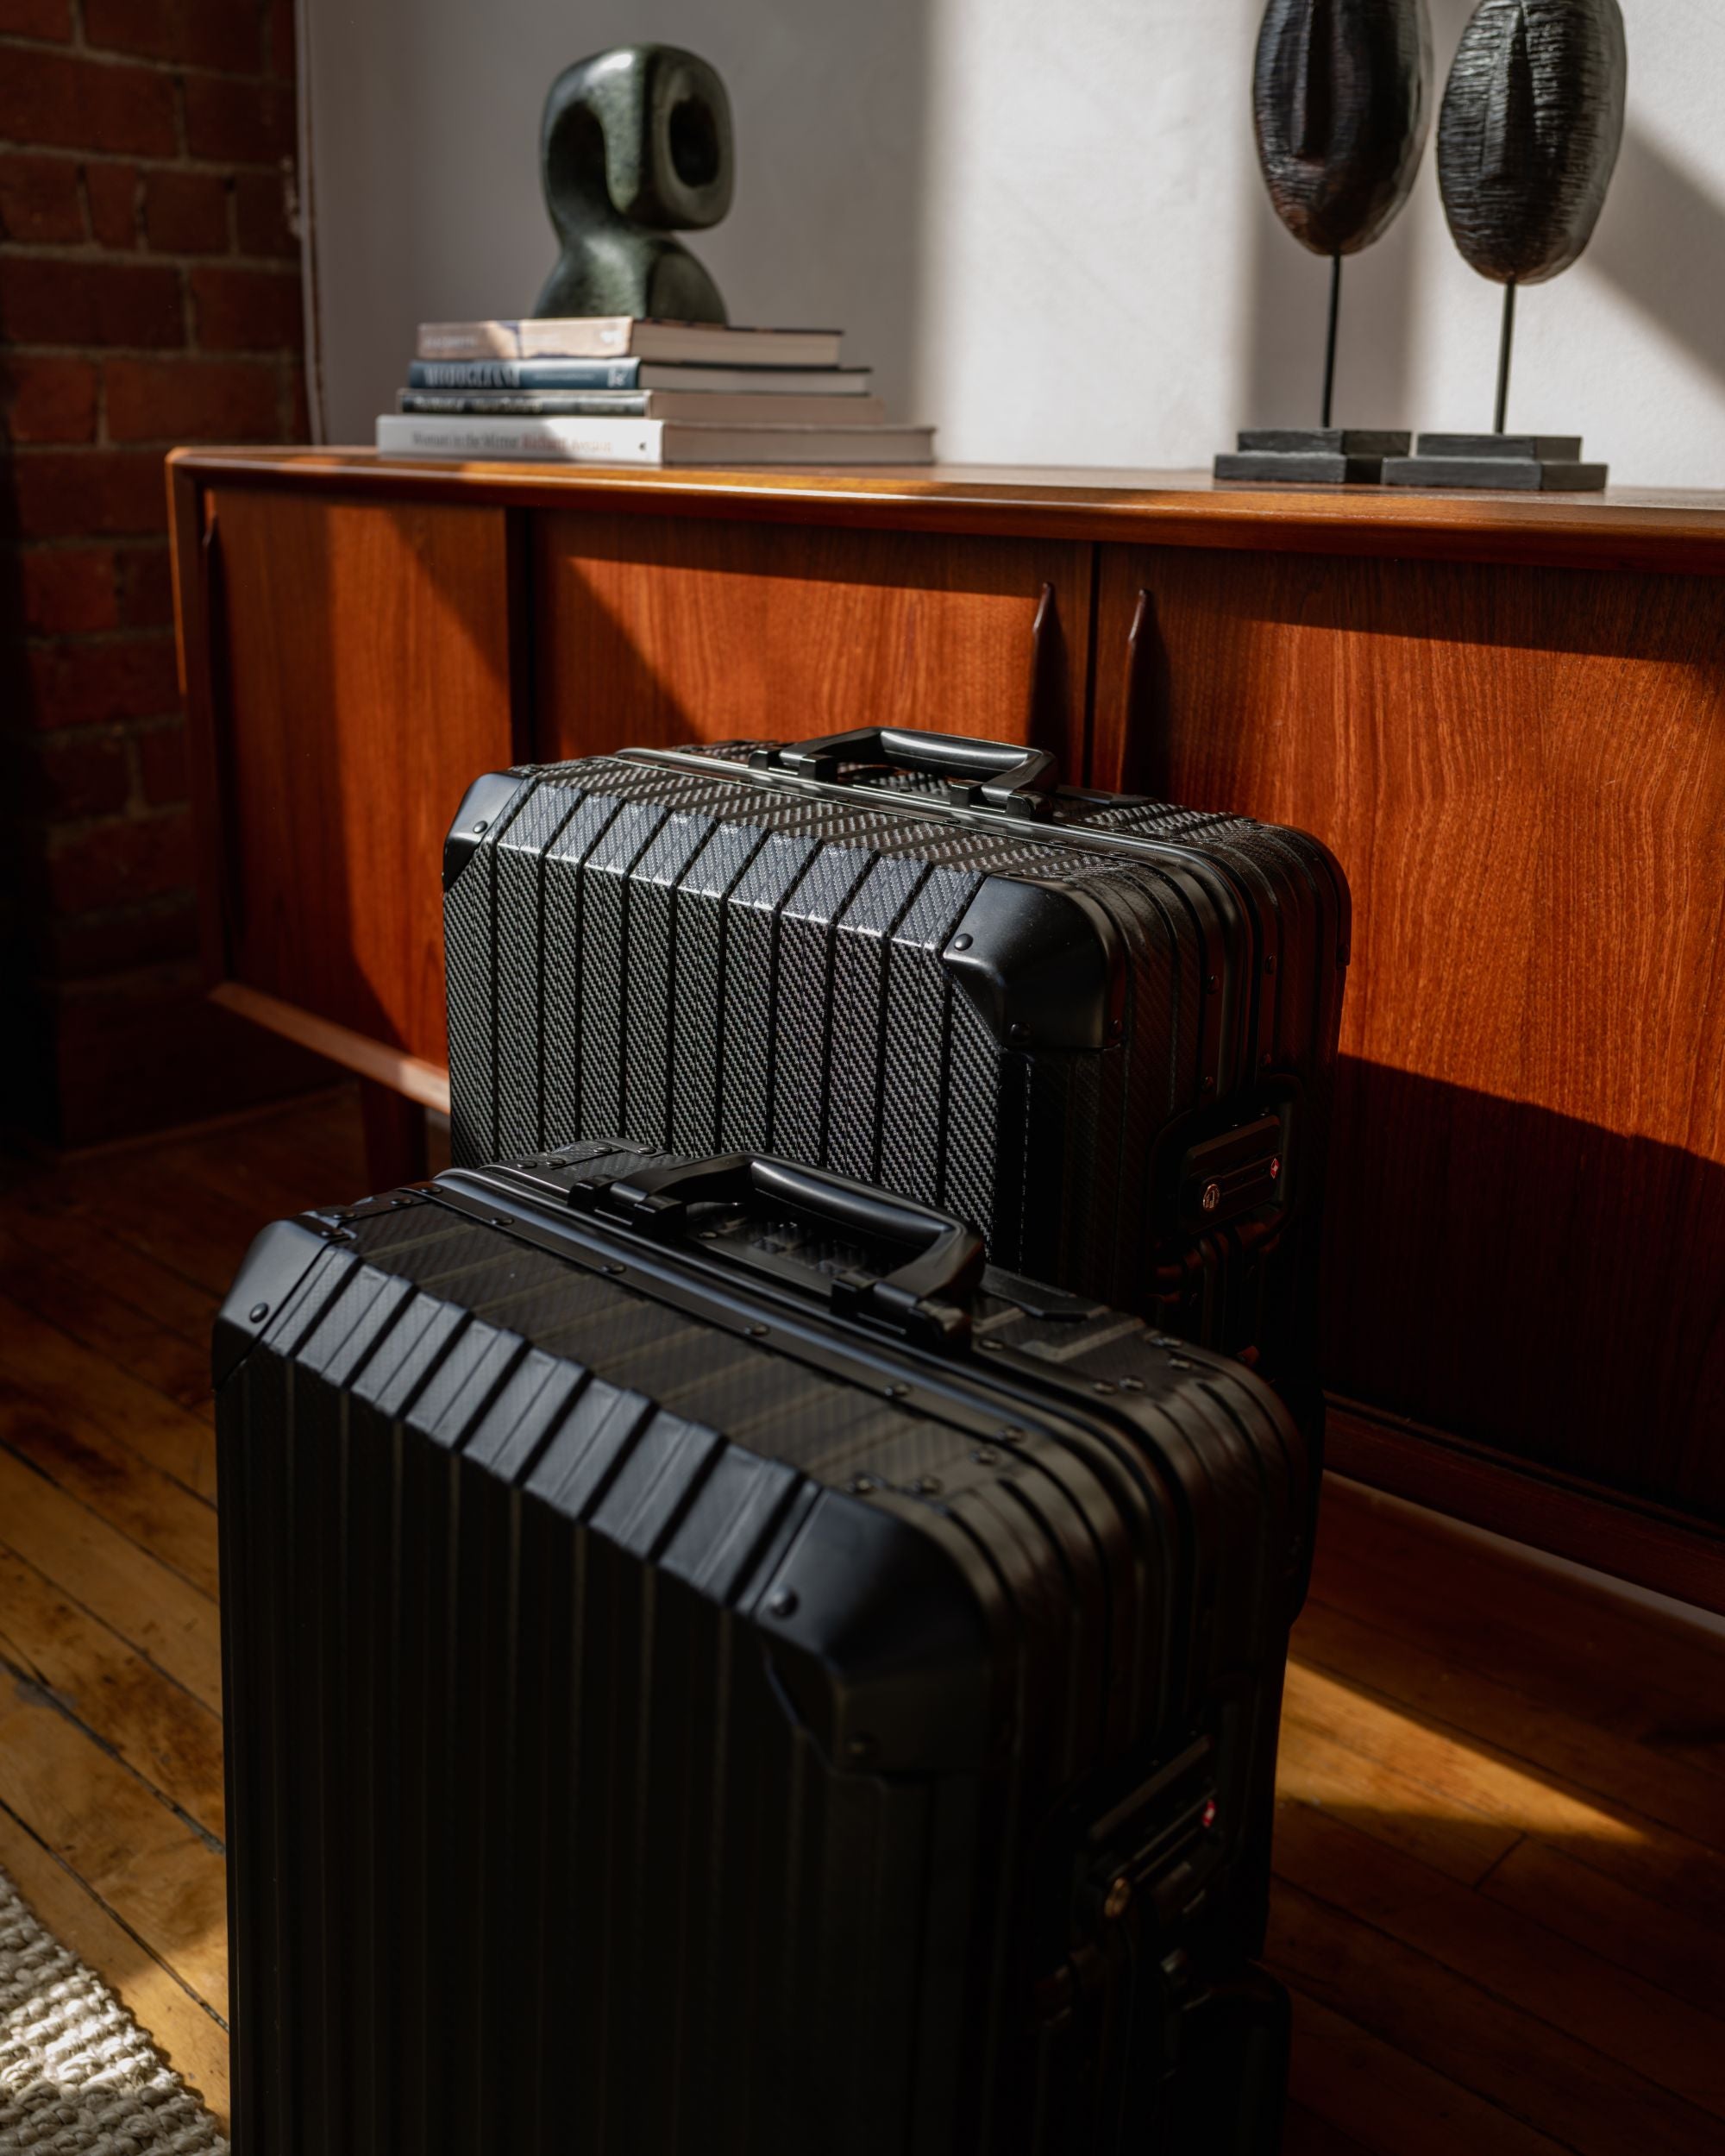 TREK Aluminum Suitcase Black | MVST